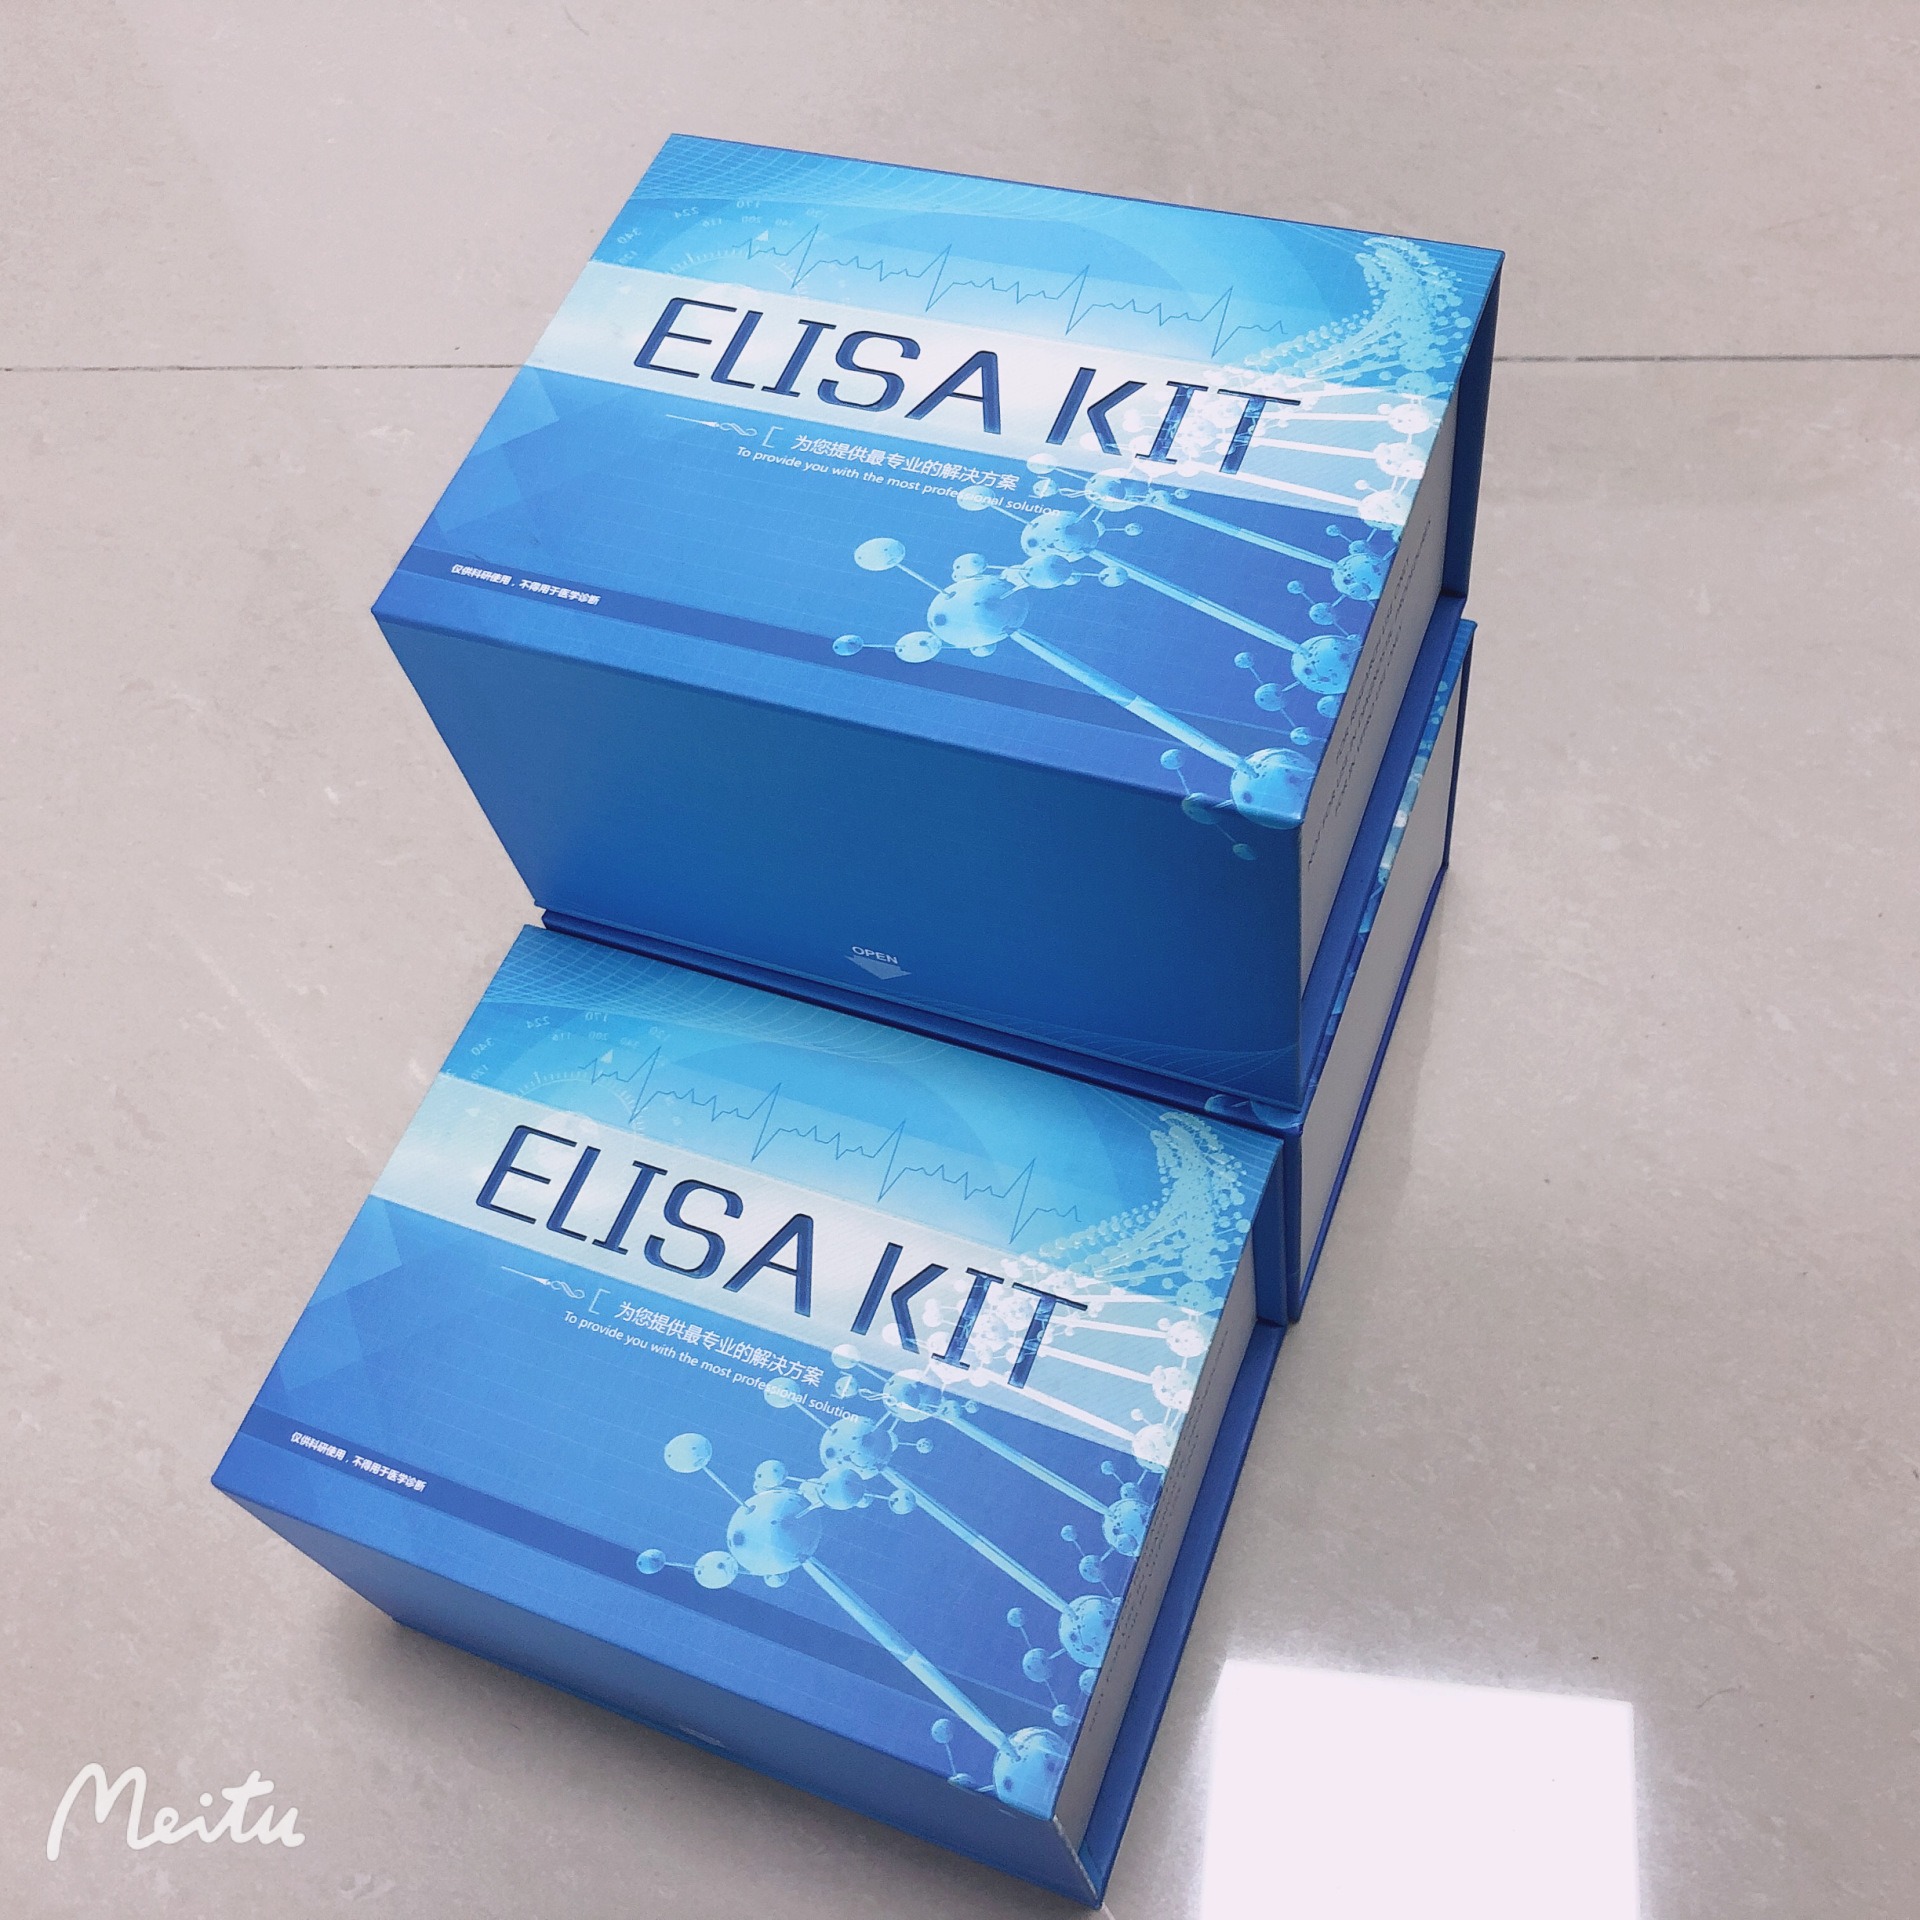 犬ELISA试剂盒 单克隆抗体作用 牛ELISA试剂盒 睿信生物图片